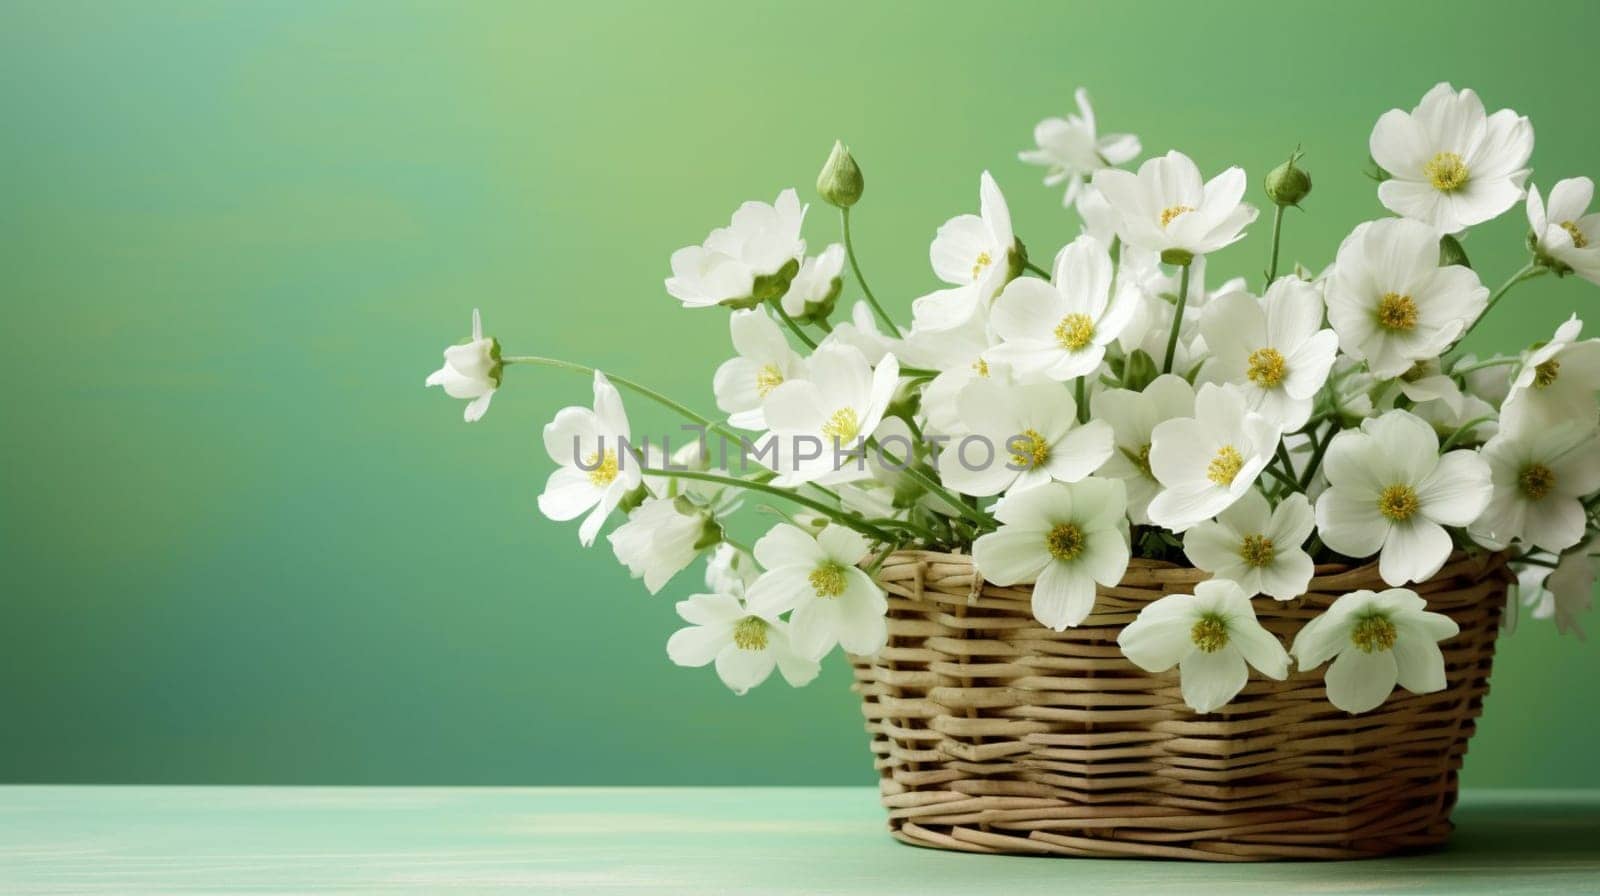 White flowers in a wicker basket on a green background by kizuneko